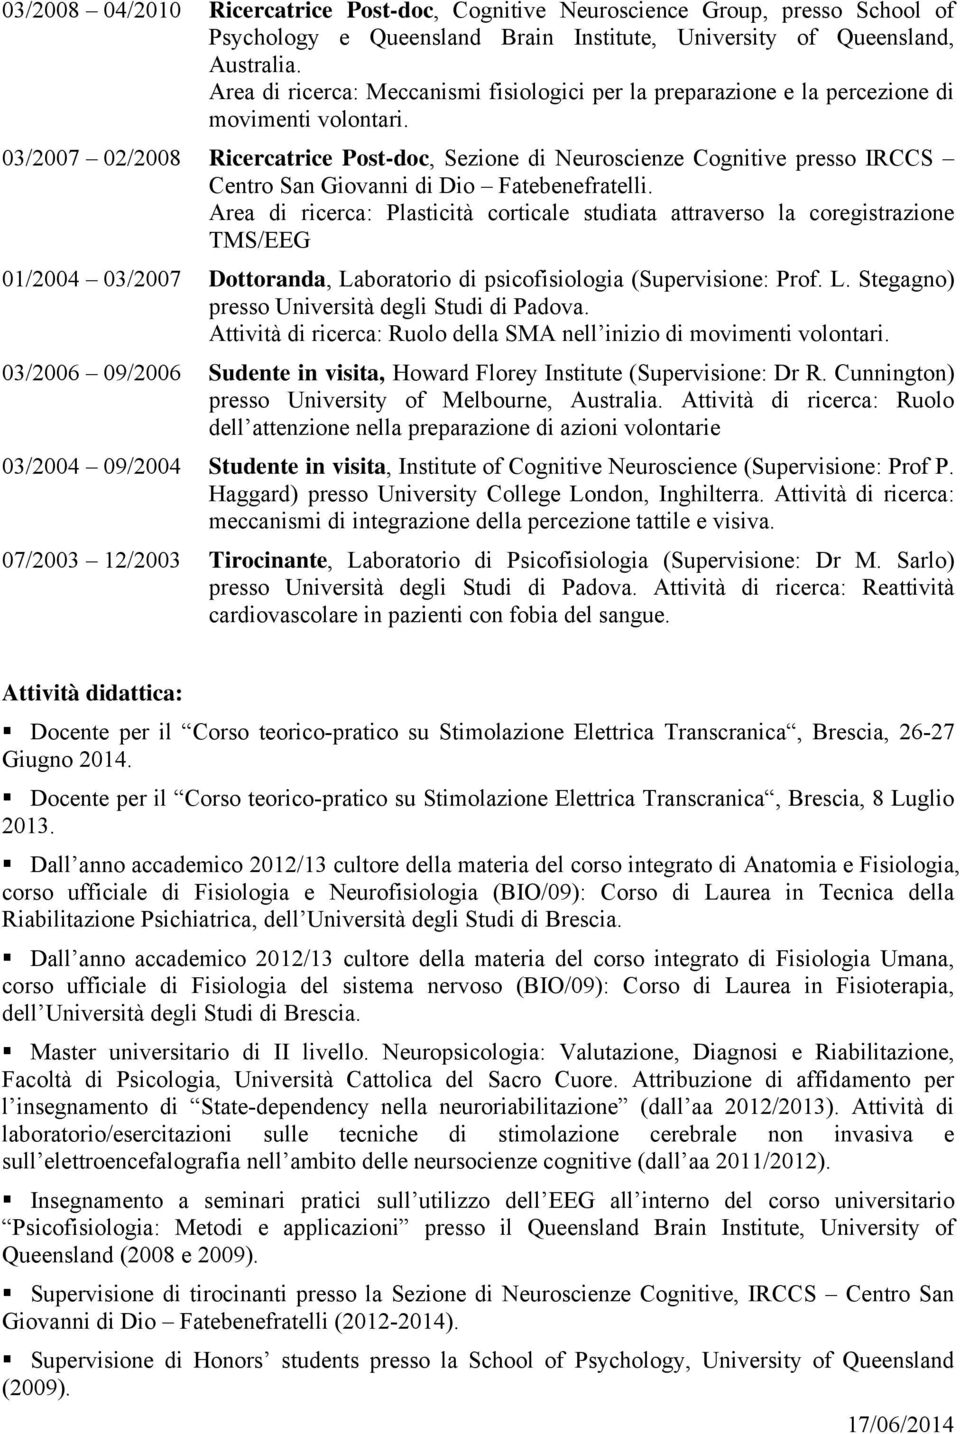 03/2007 02/2008 Ricercatrice Post-doc, Sezione di Neuroscienze Cognitive presso IRCCS Centro San Giovanni di Dio Fatebenefratelli.